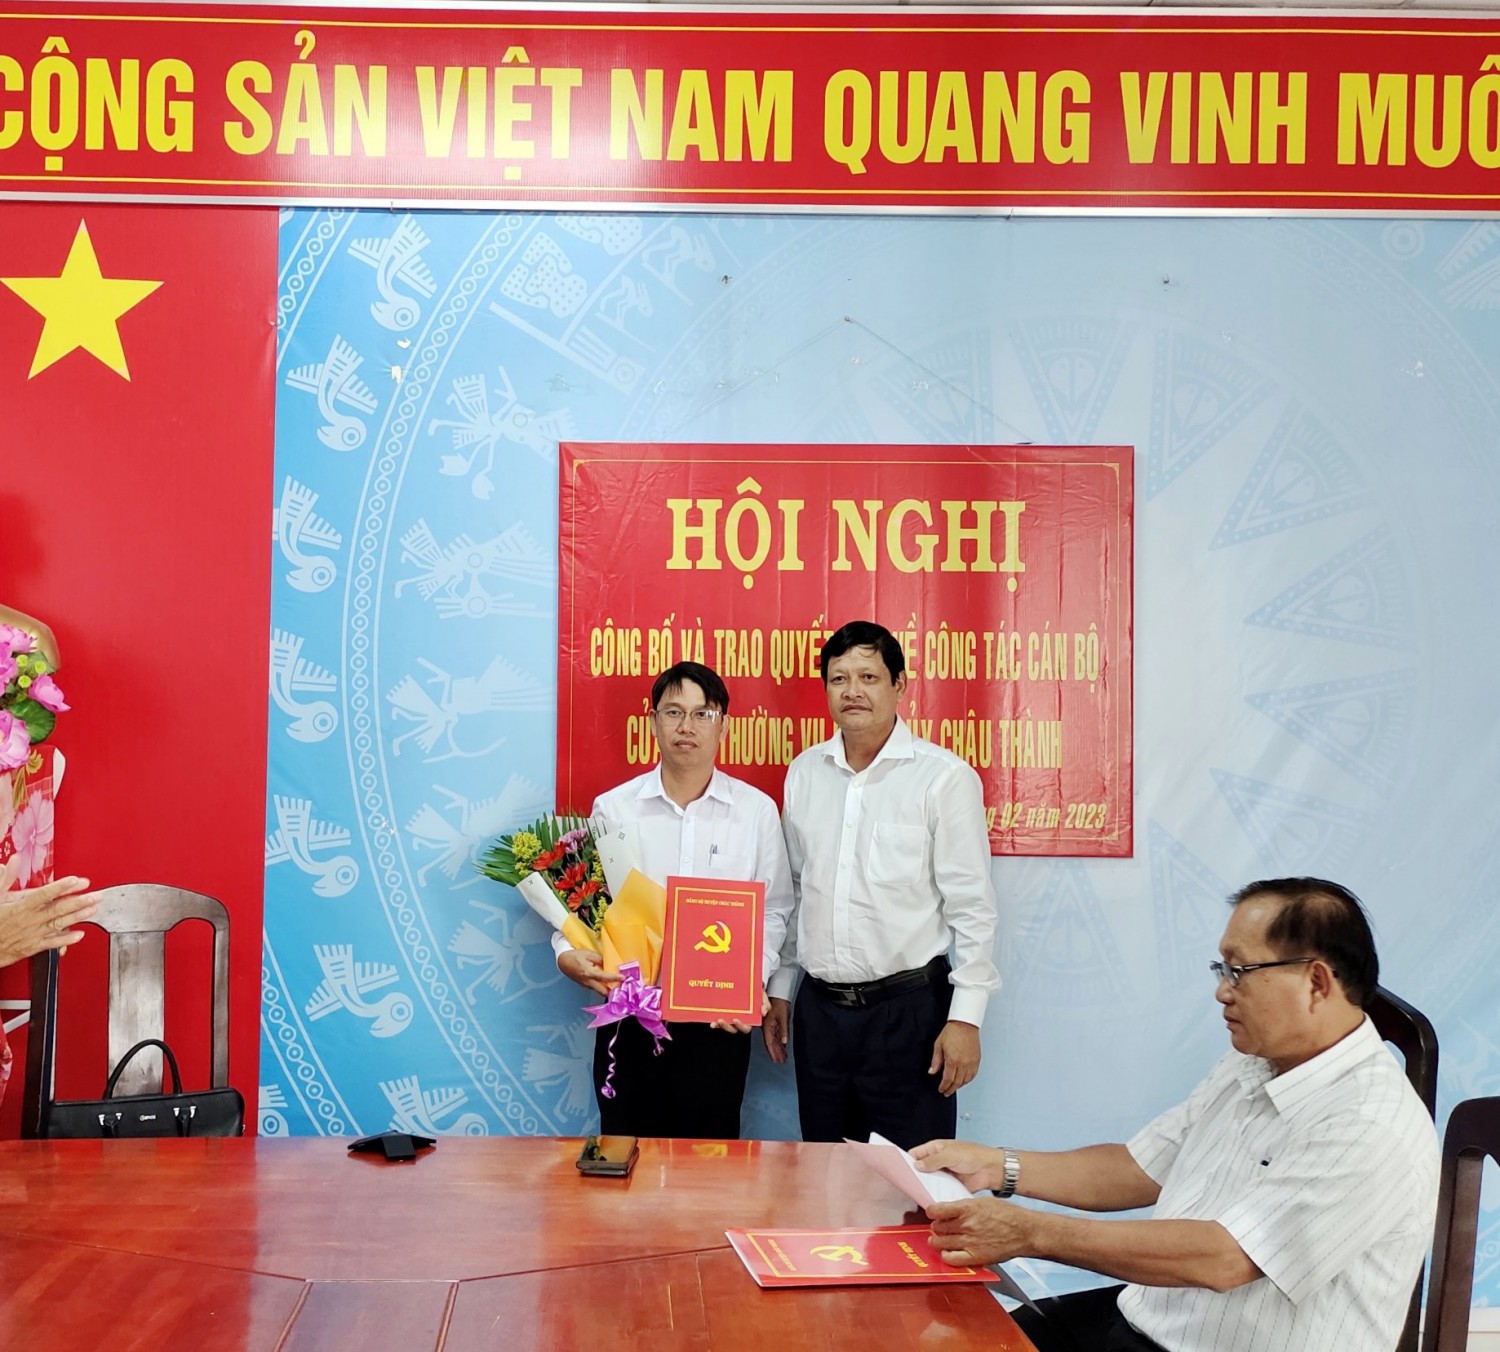 ông Nguyễn Thành Tiễn, Bí thư Huyện ủy Châu Thành trao quyết định cho đồng chí Nguyễn Văn Cường